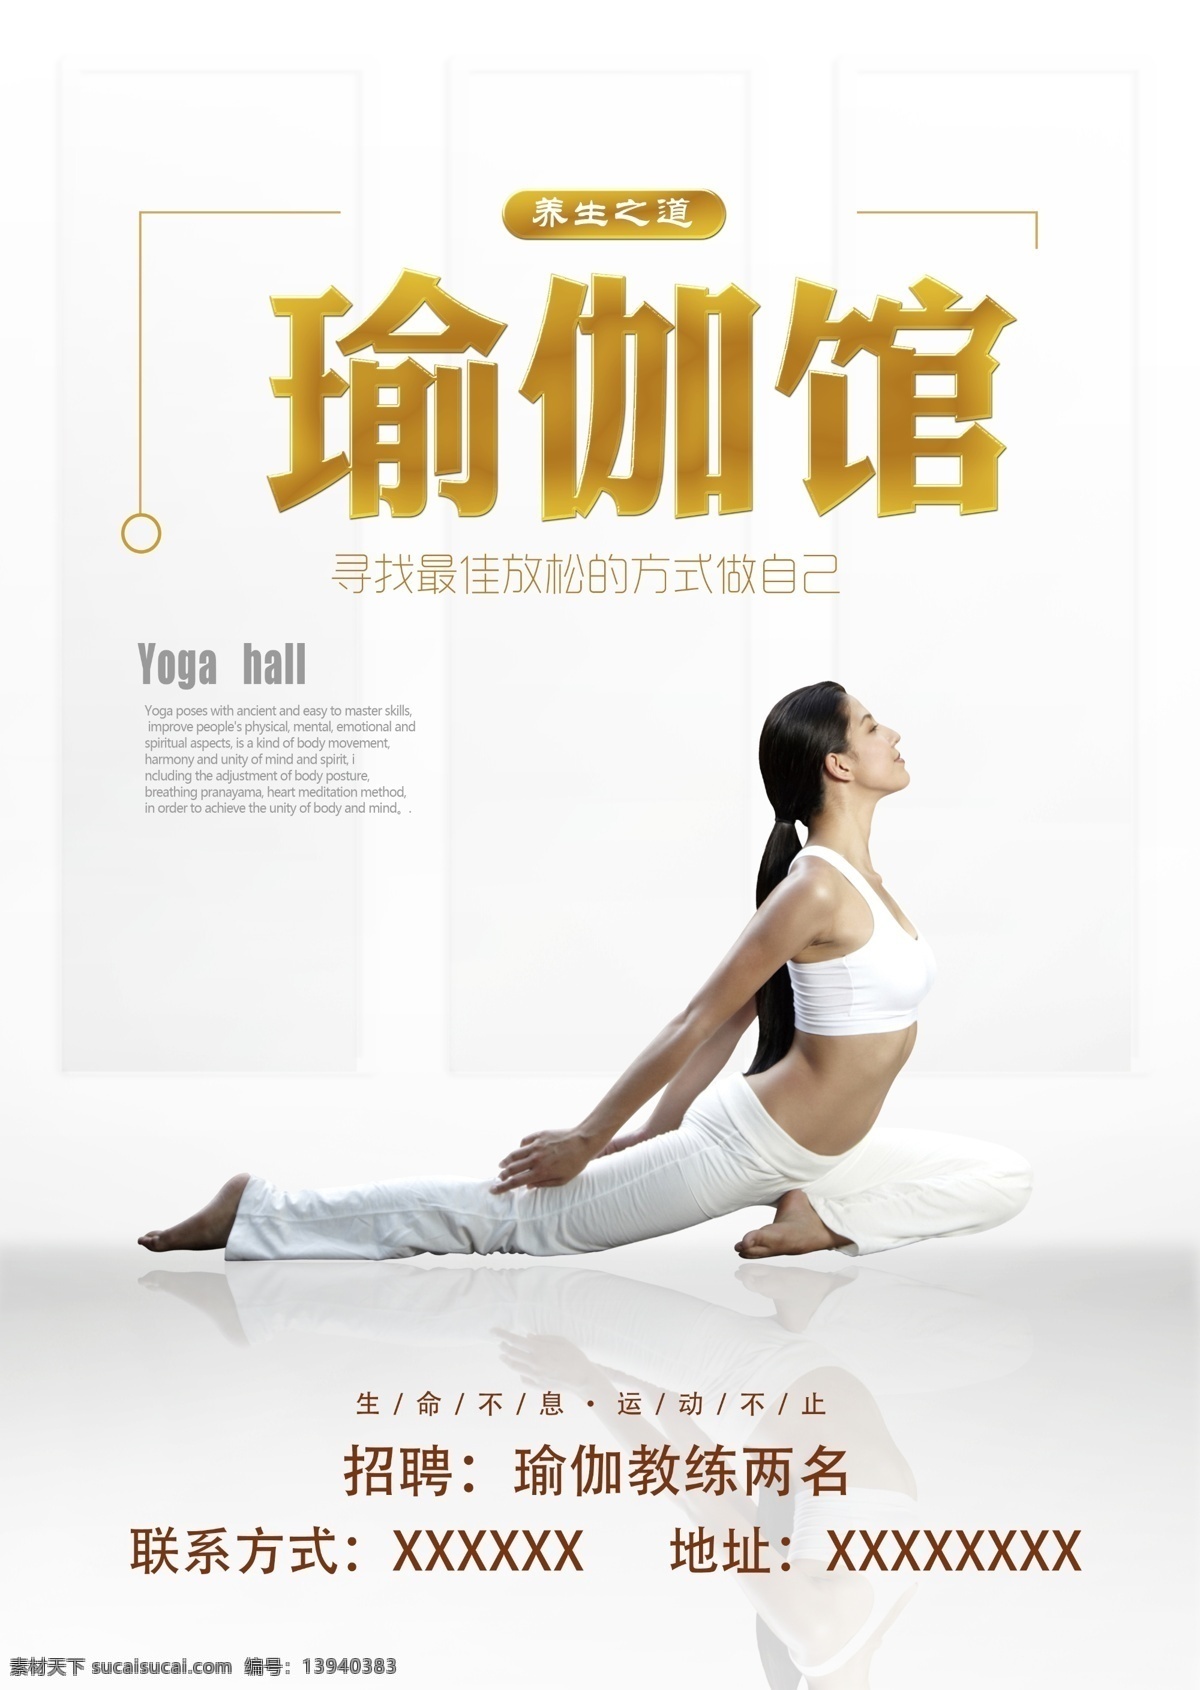 瑜伽广告 瑜伽 健身 广告 美女 健身馆 锻炼 海报 健美 健身会所 美体 清新 甜美